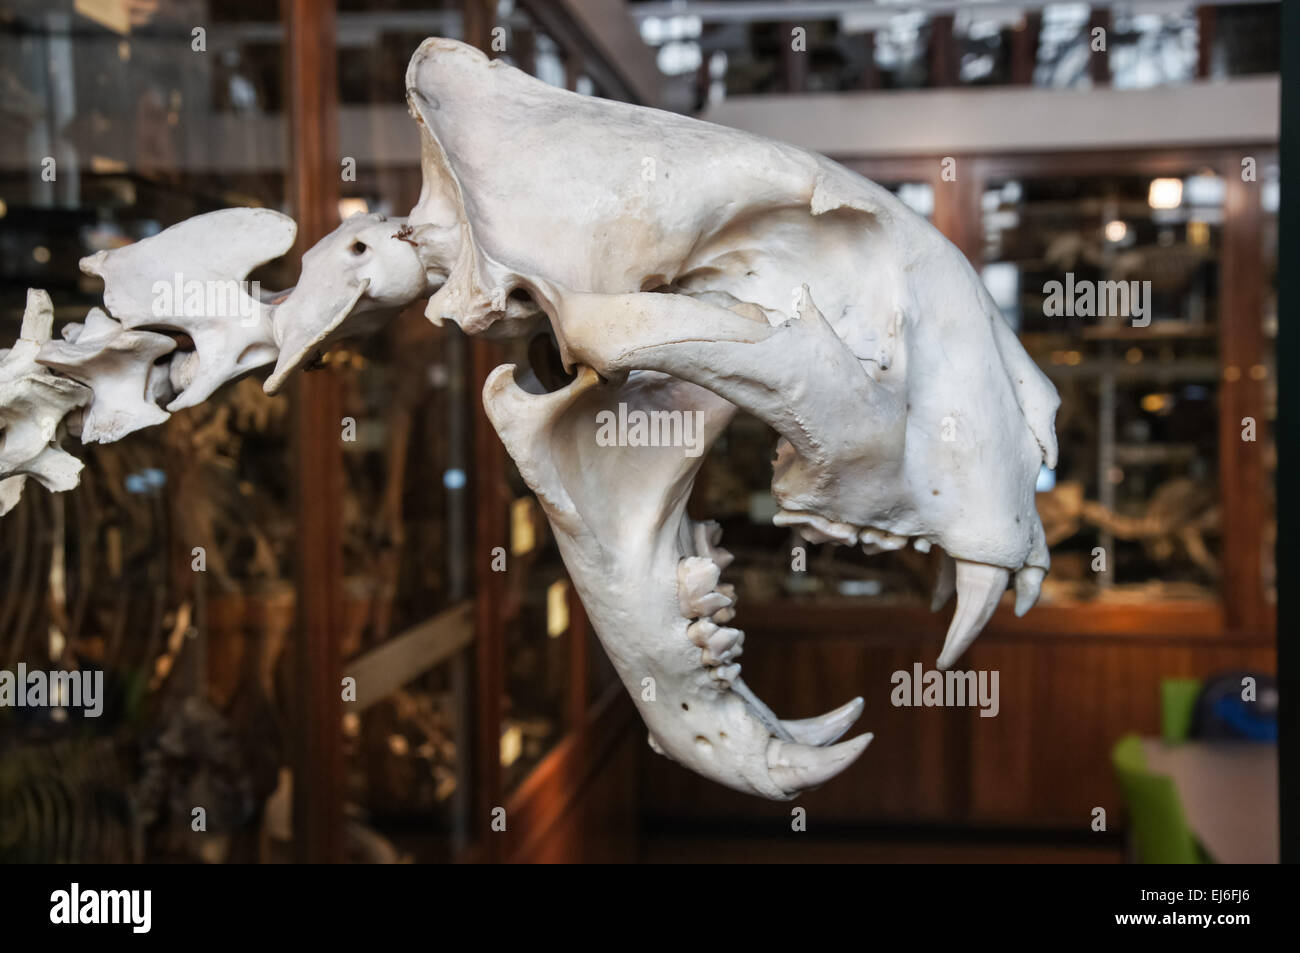 La subvention Musée de zoologie, tigre crâne, Londres Angleterre Royaume-Uni UK Banque D'Images